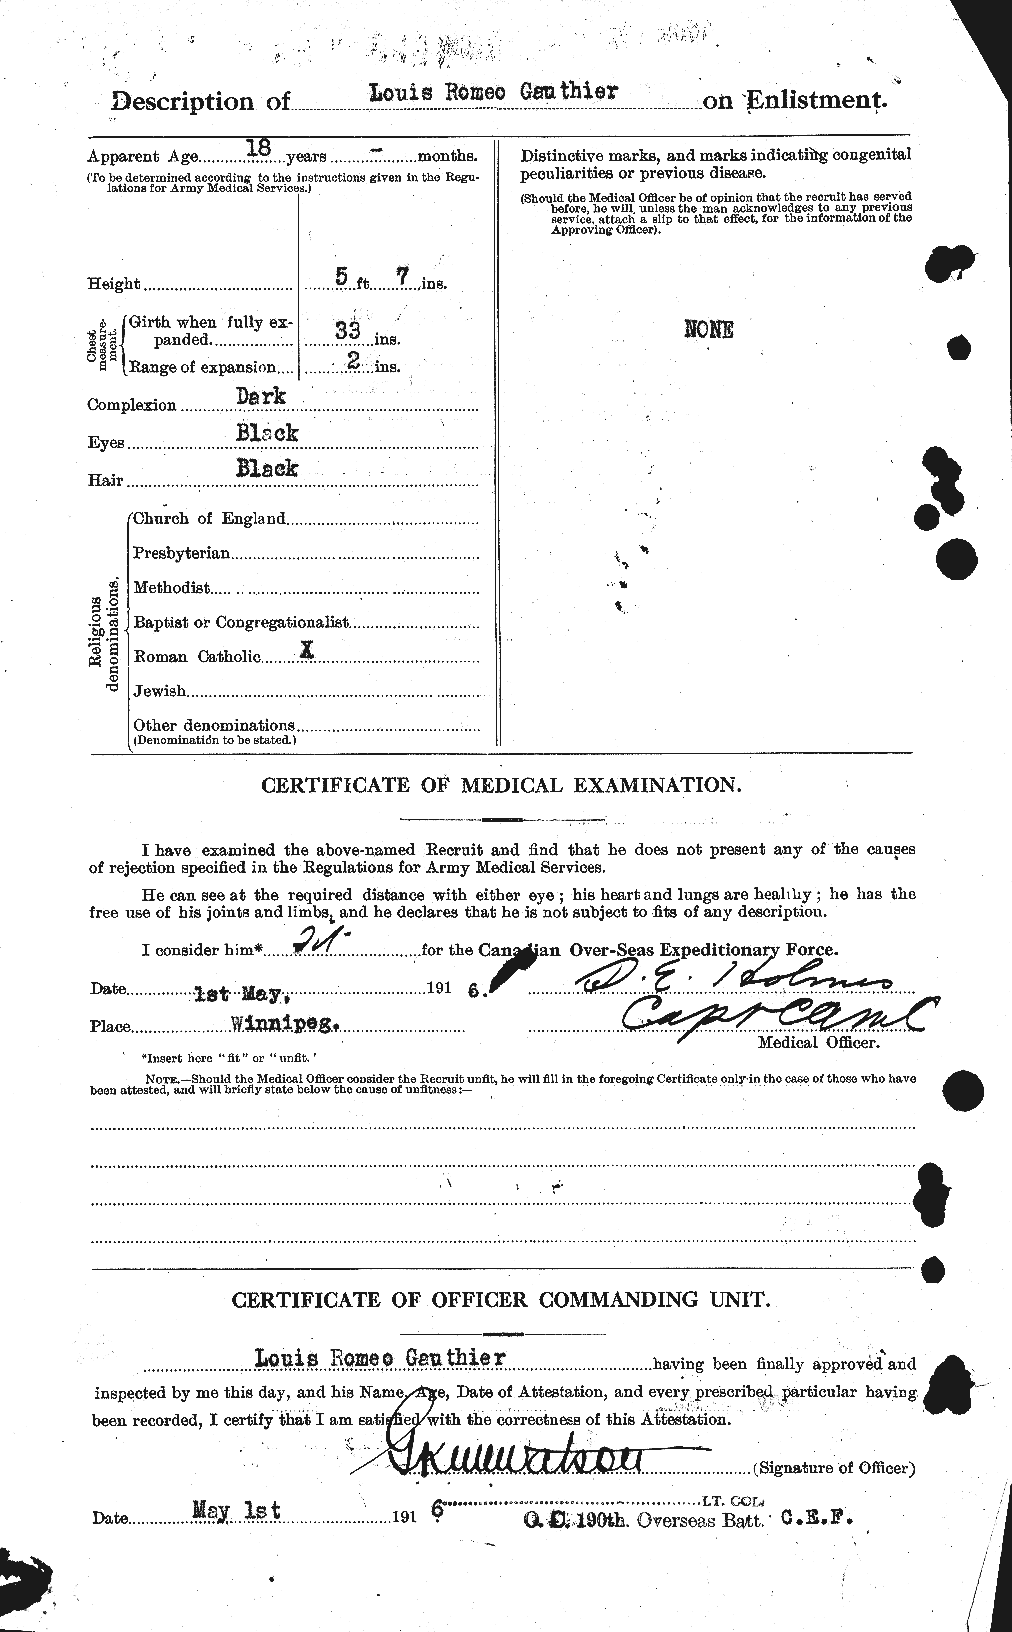 Dossiers du Personnel de la Première Guerre mondiale - CEC 342939b